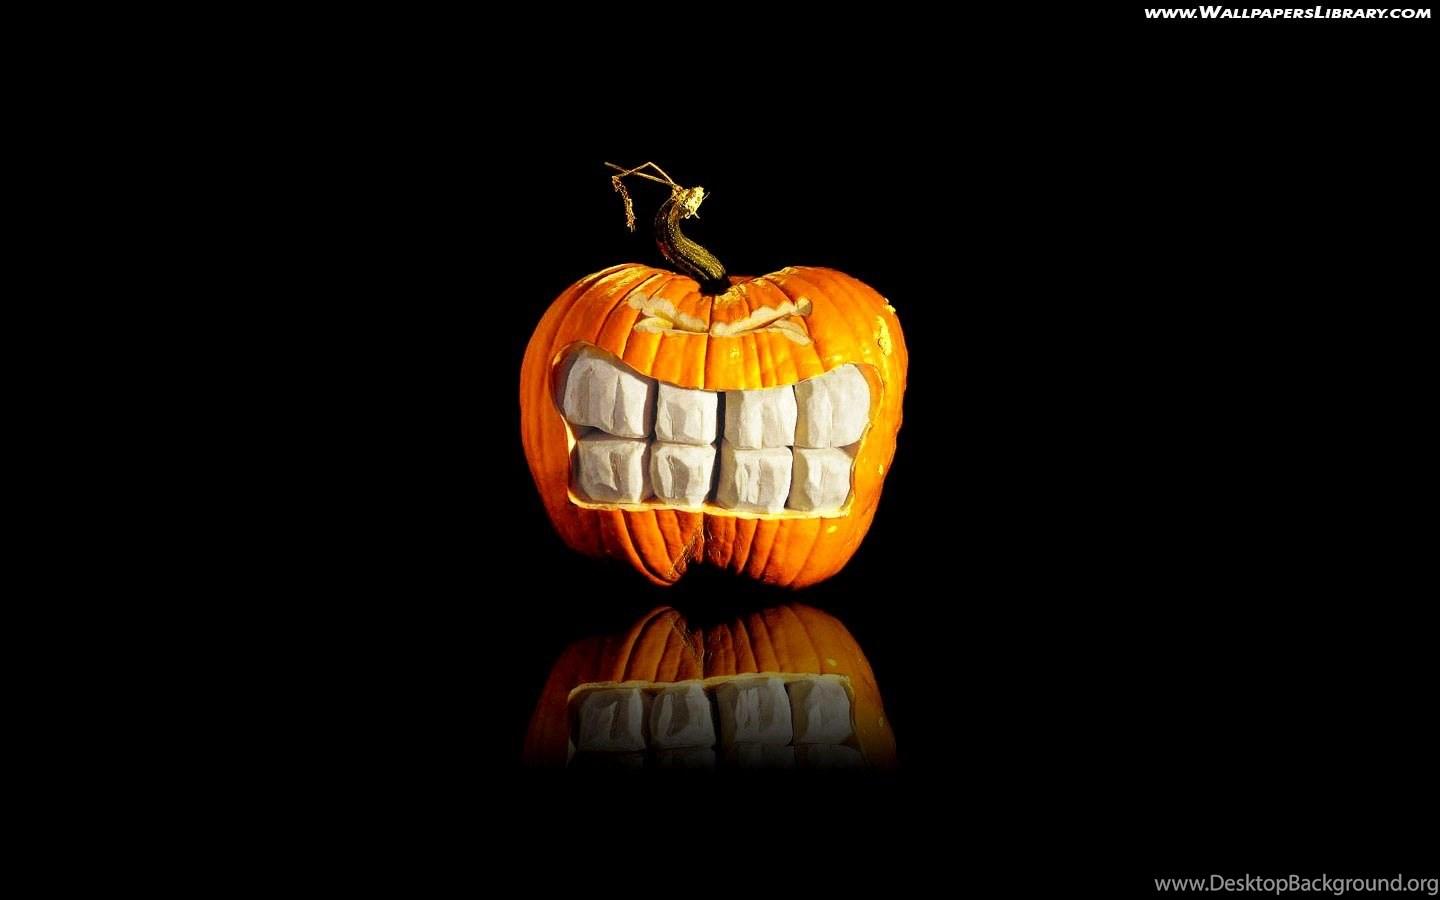 3D Halloween Wallpaper Halloween Pumpkin Photo Of 3D